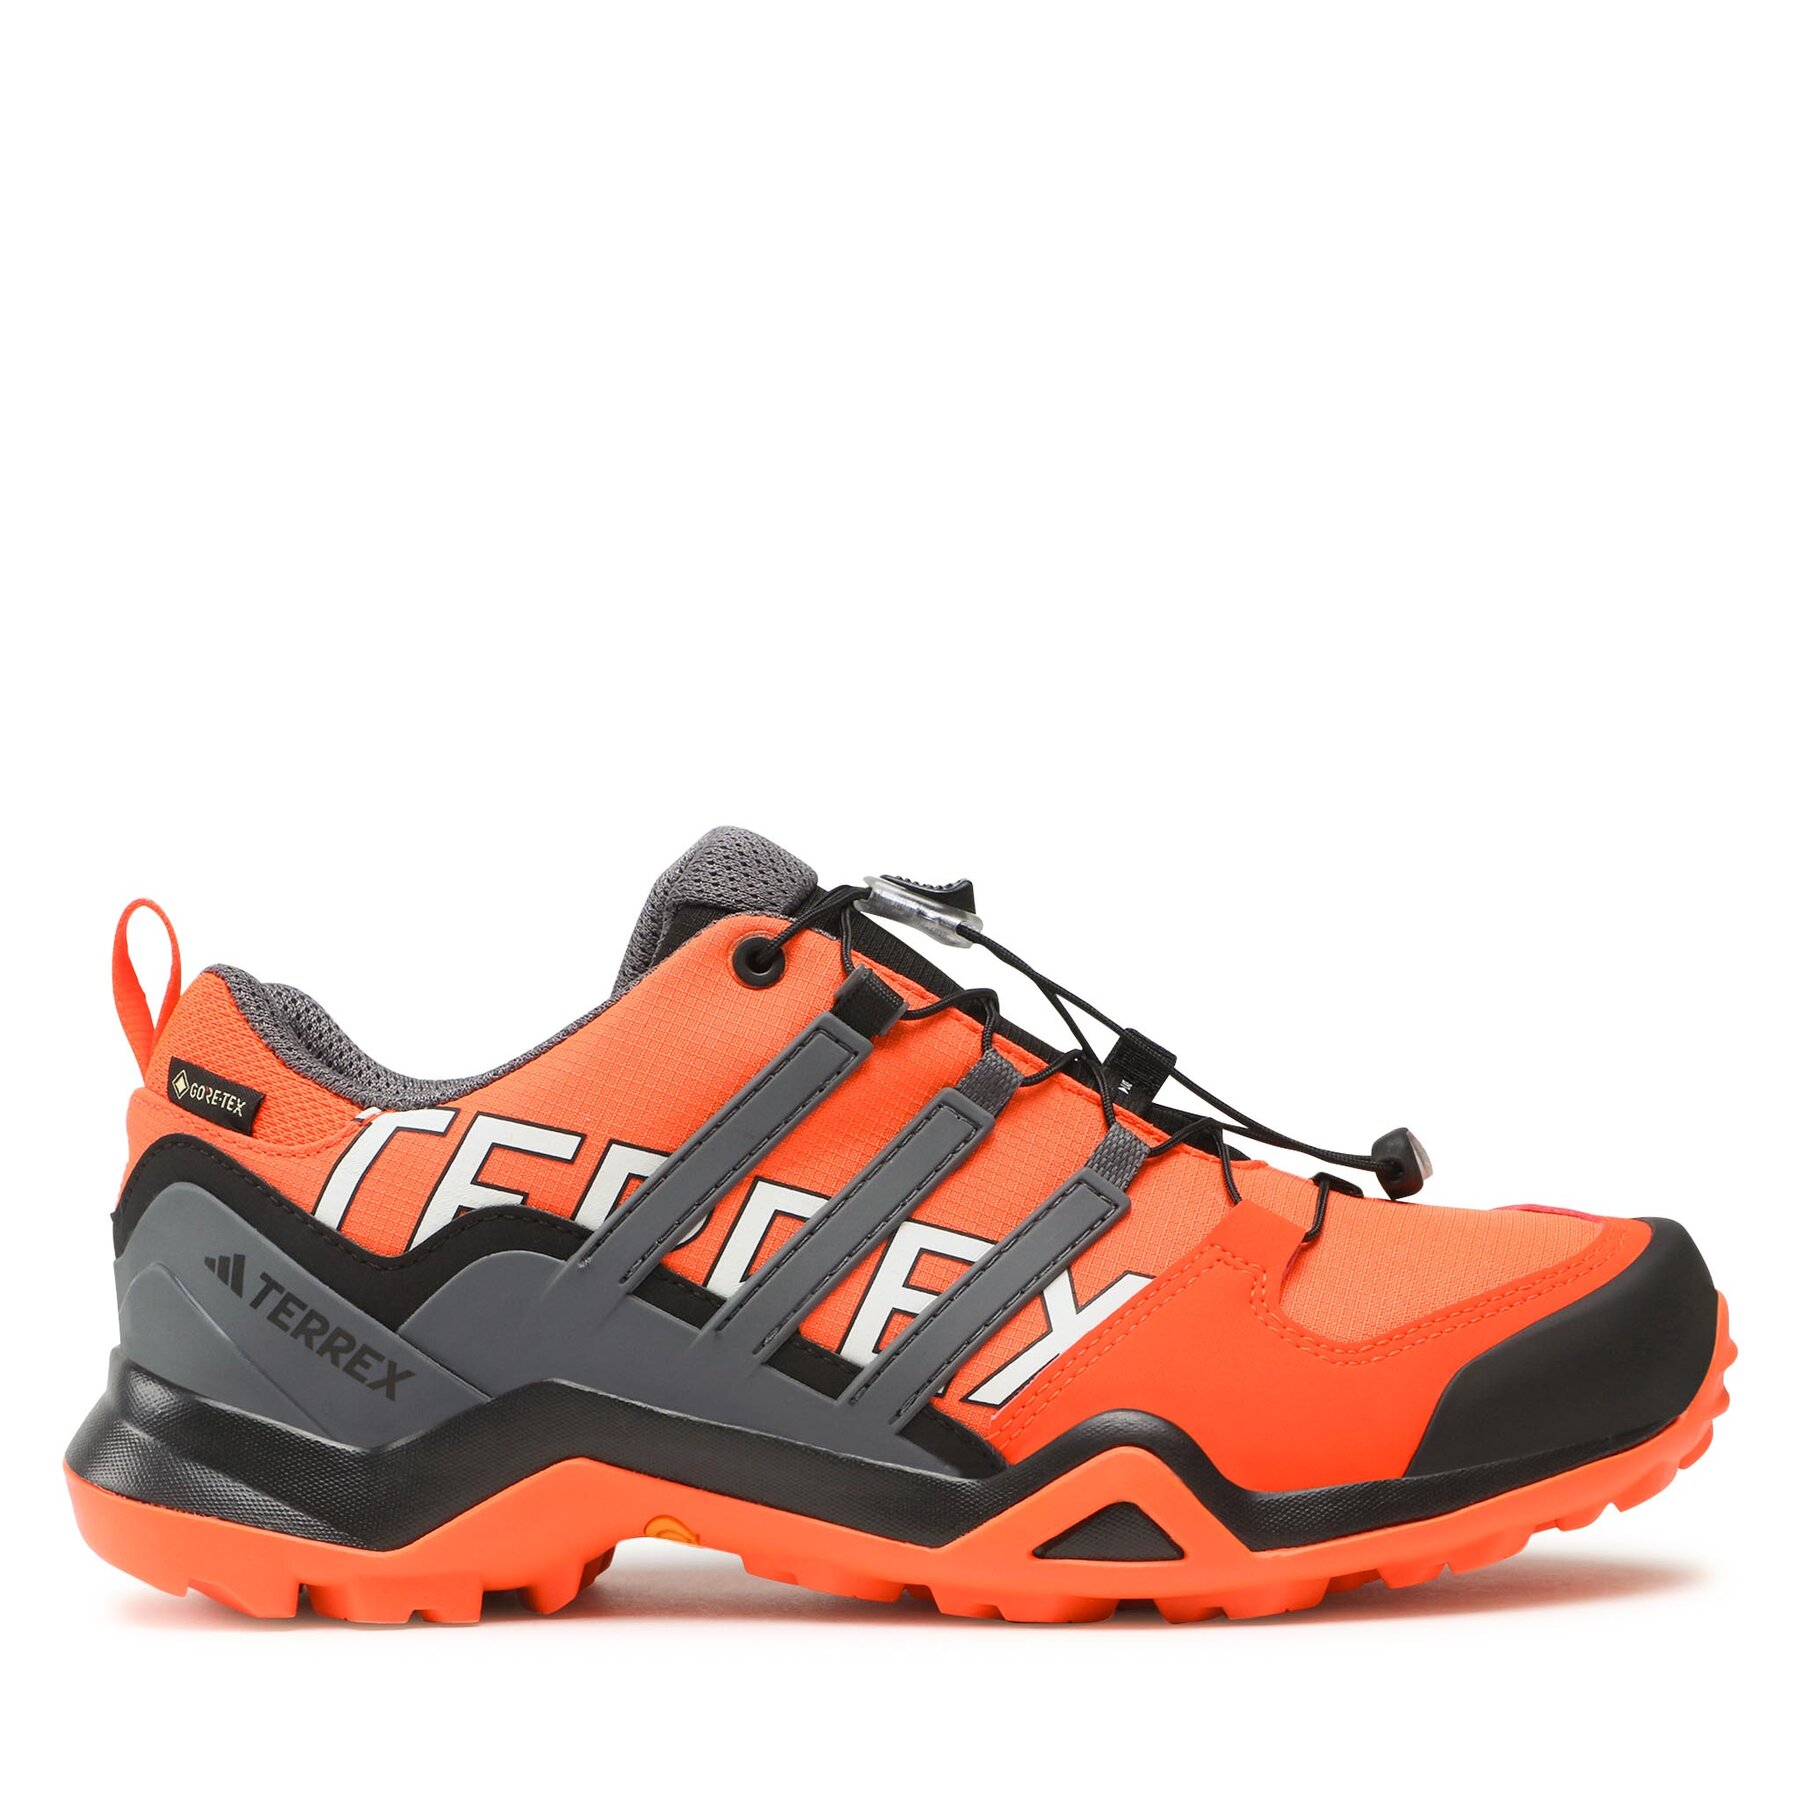 Trekkingschuhe adidas Terrex Swift R2 GORE-TEX Hiking Shoes IF7632 Orange von Adidas